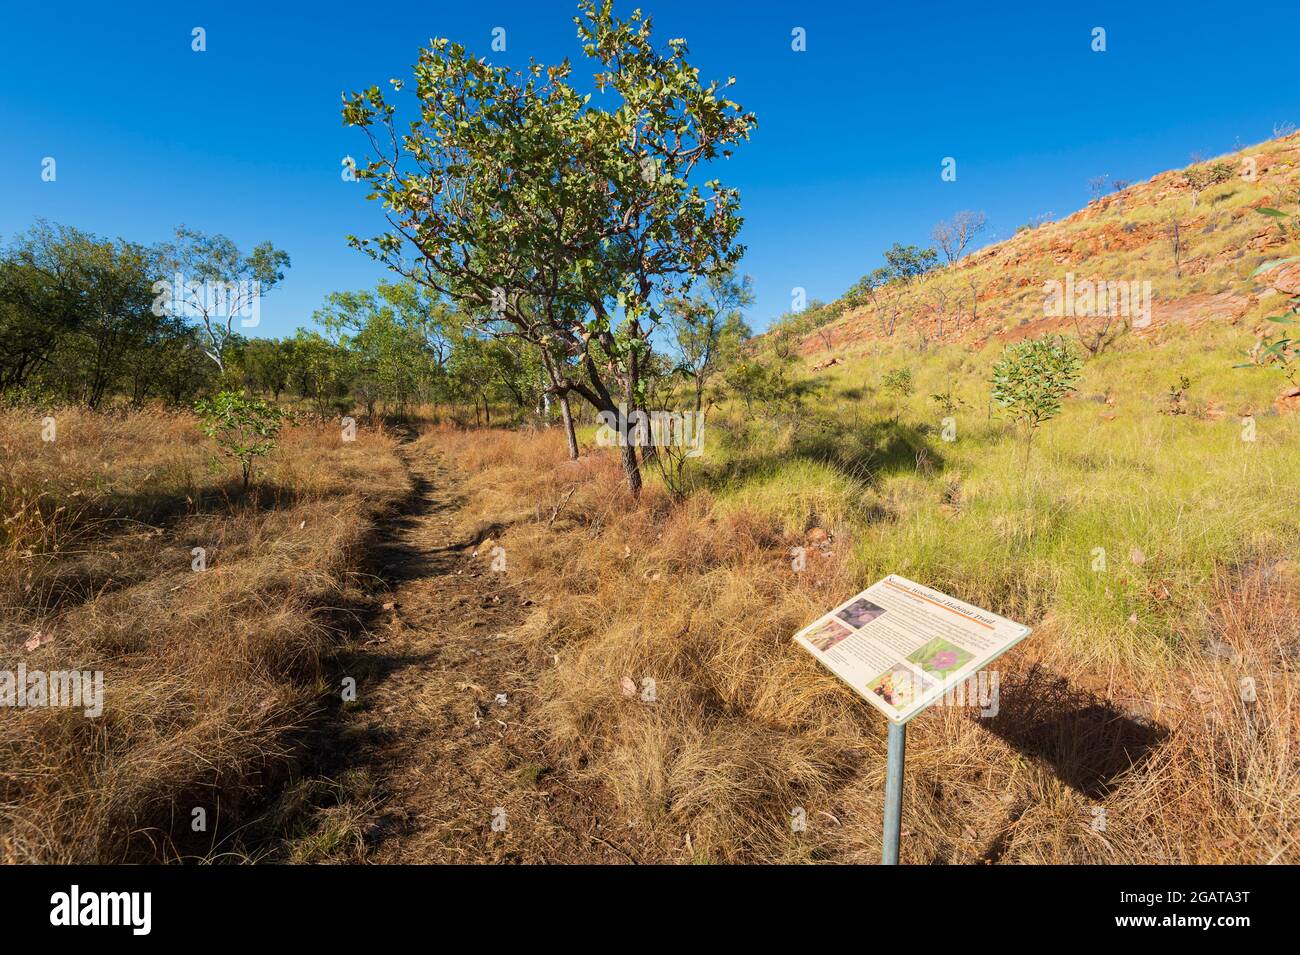 Panneau d'interprétation le long de Savannah Trail, Mornington Wilderness Camp, région de Kimberley, Australie occidentale, Australie occidentale, Australie Banque D'Images